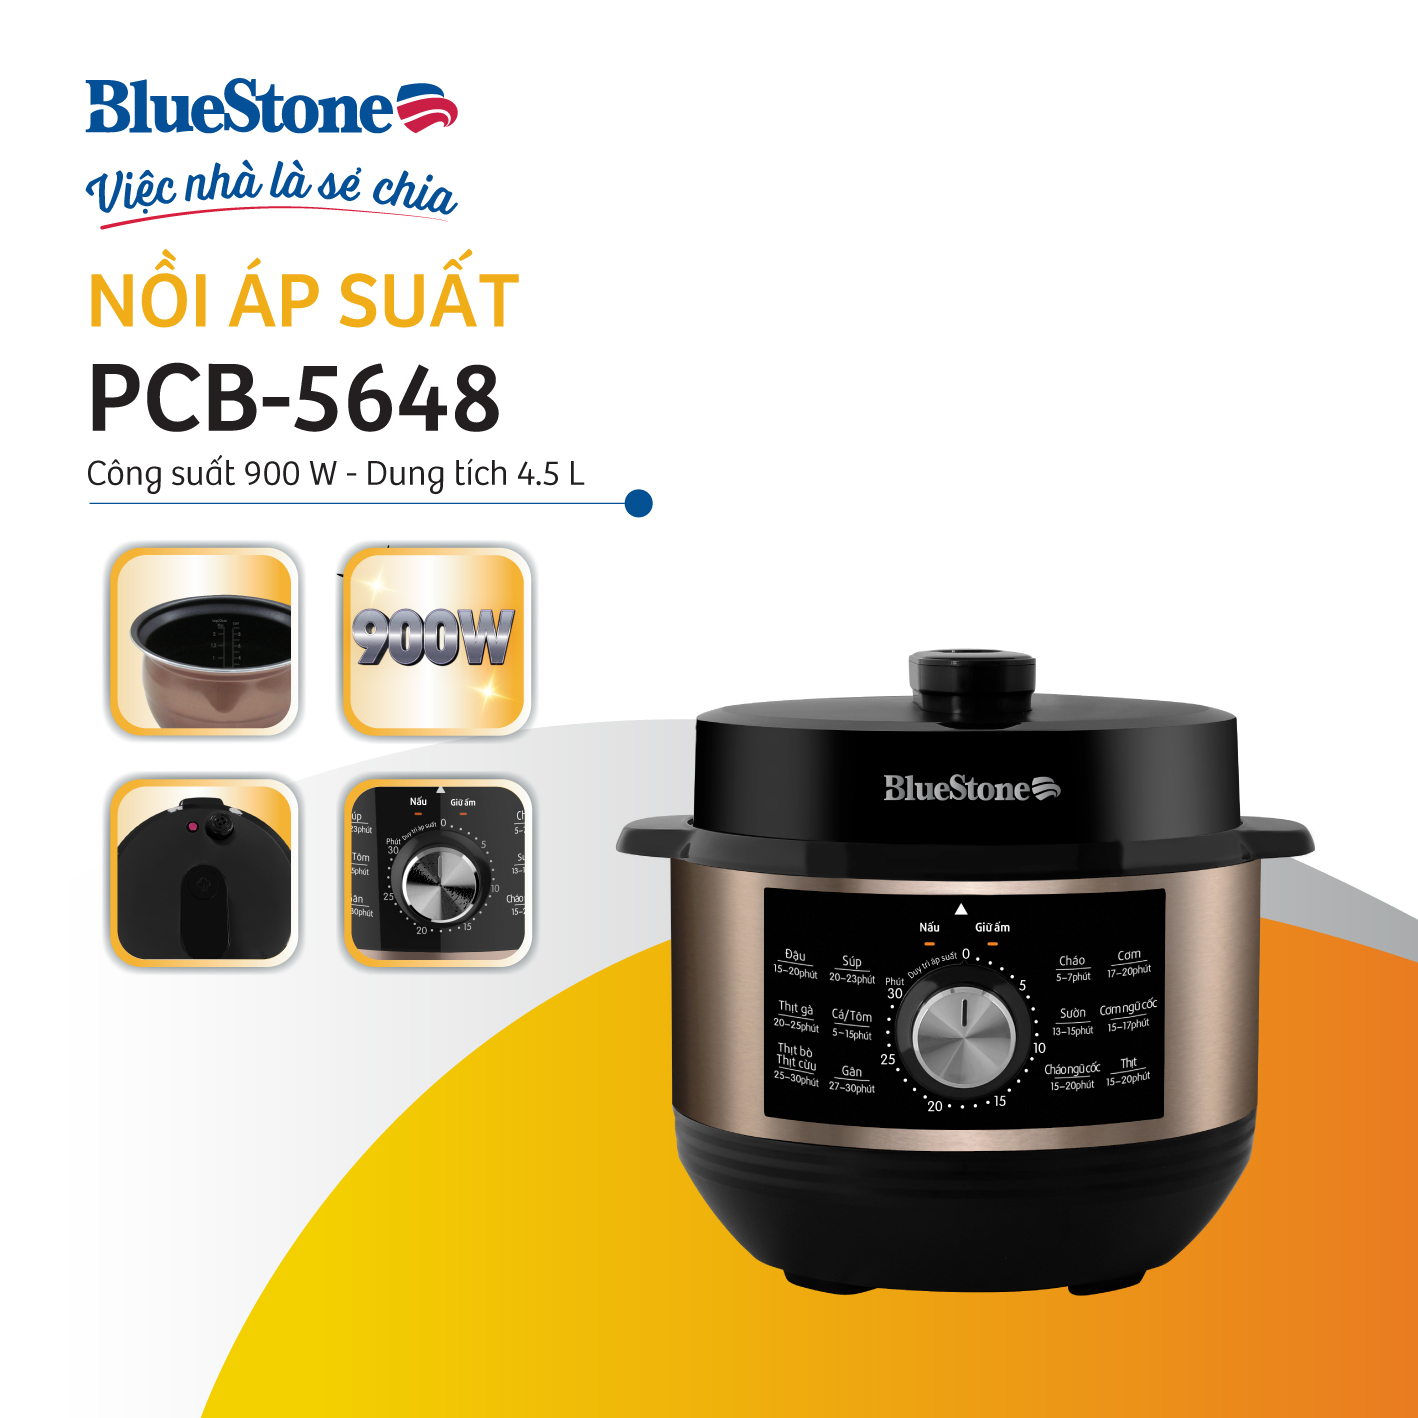 Nồi Áp Suất BlueStone PCB-5648 - 4,5 lít - 900W - Bảng điều khiển cơ - Bảo hành 2 năm - Hàng chính hãng